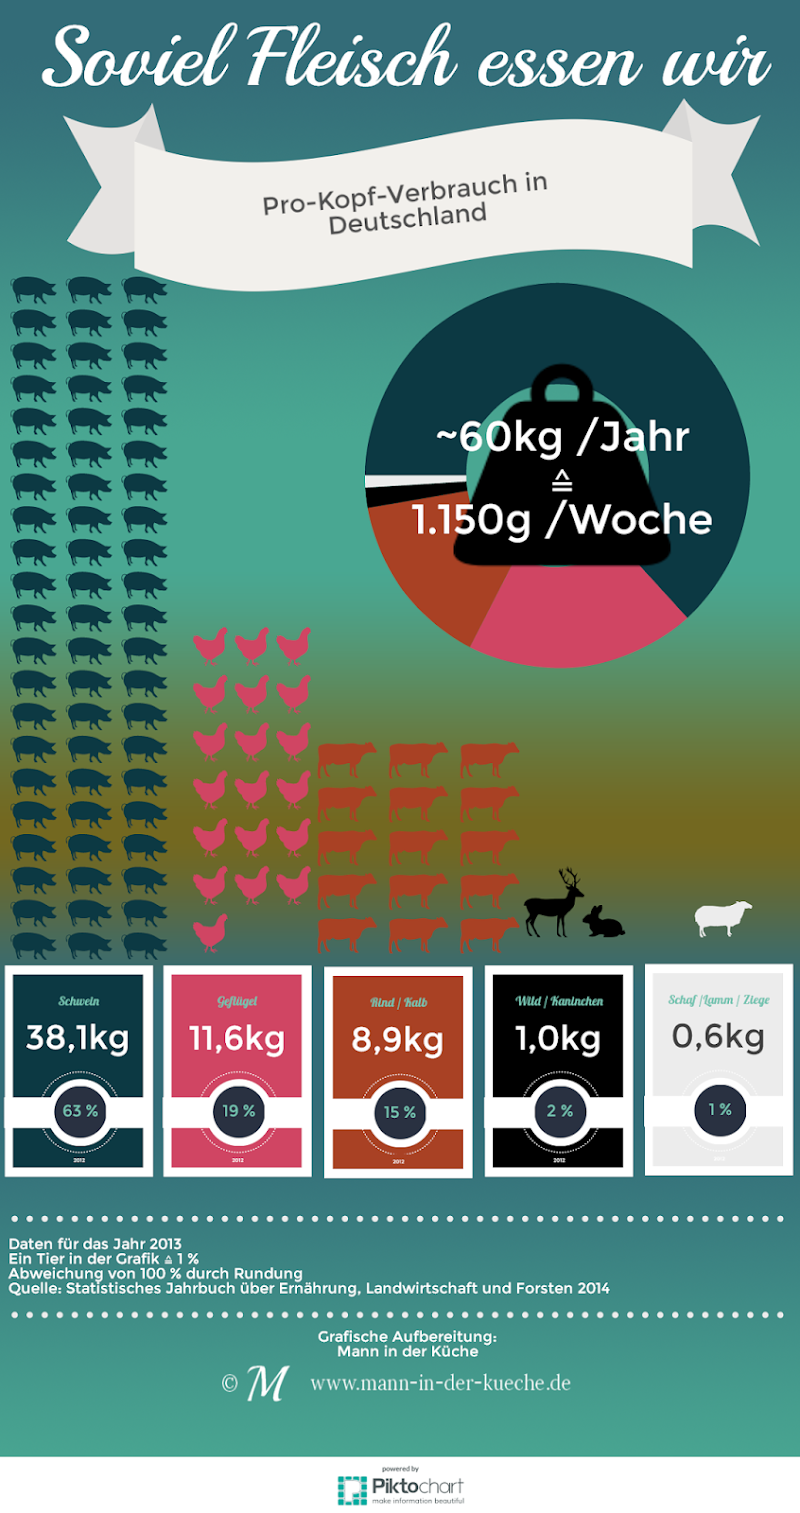 Soviel Fleisch essen wir - Infografik zum Pro-Kopf-Verbrauch von Fleisch in Deutschland